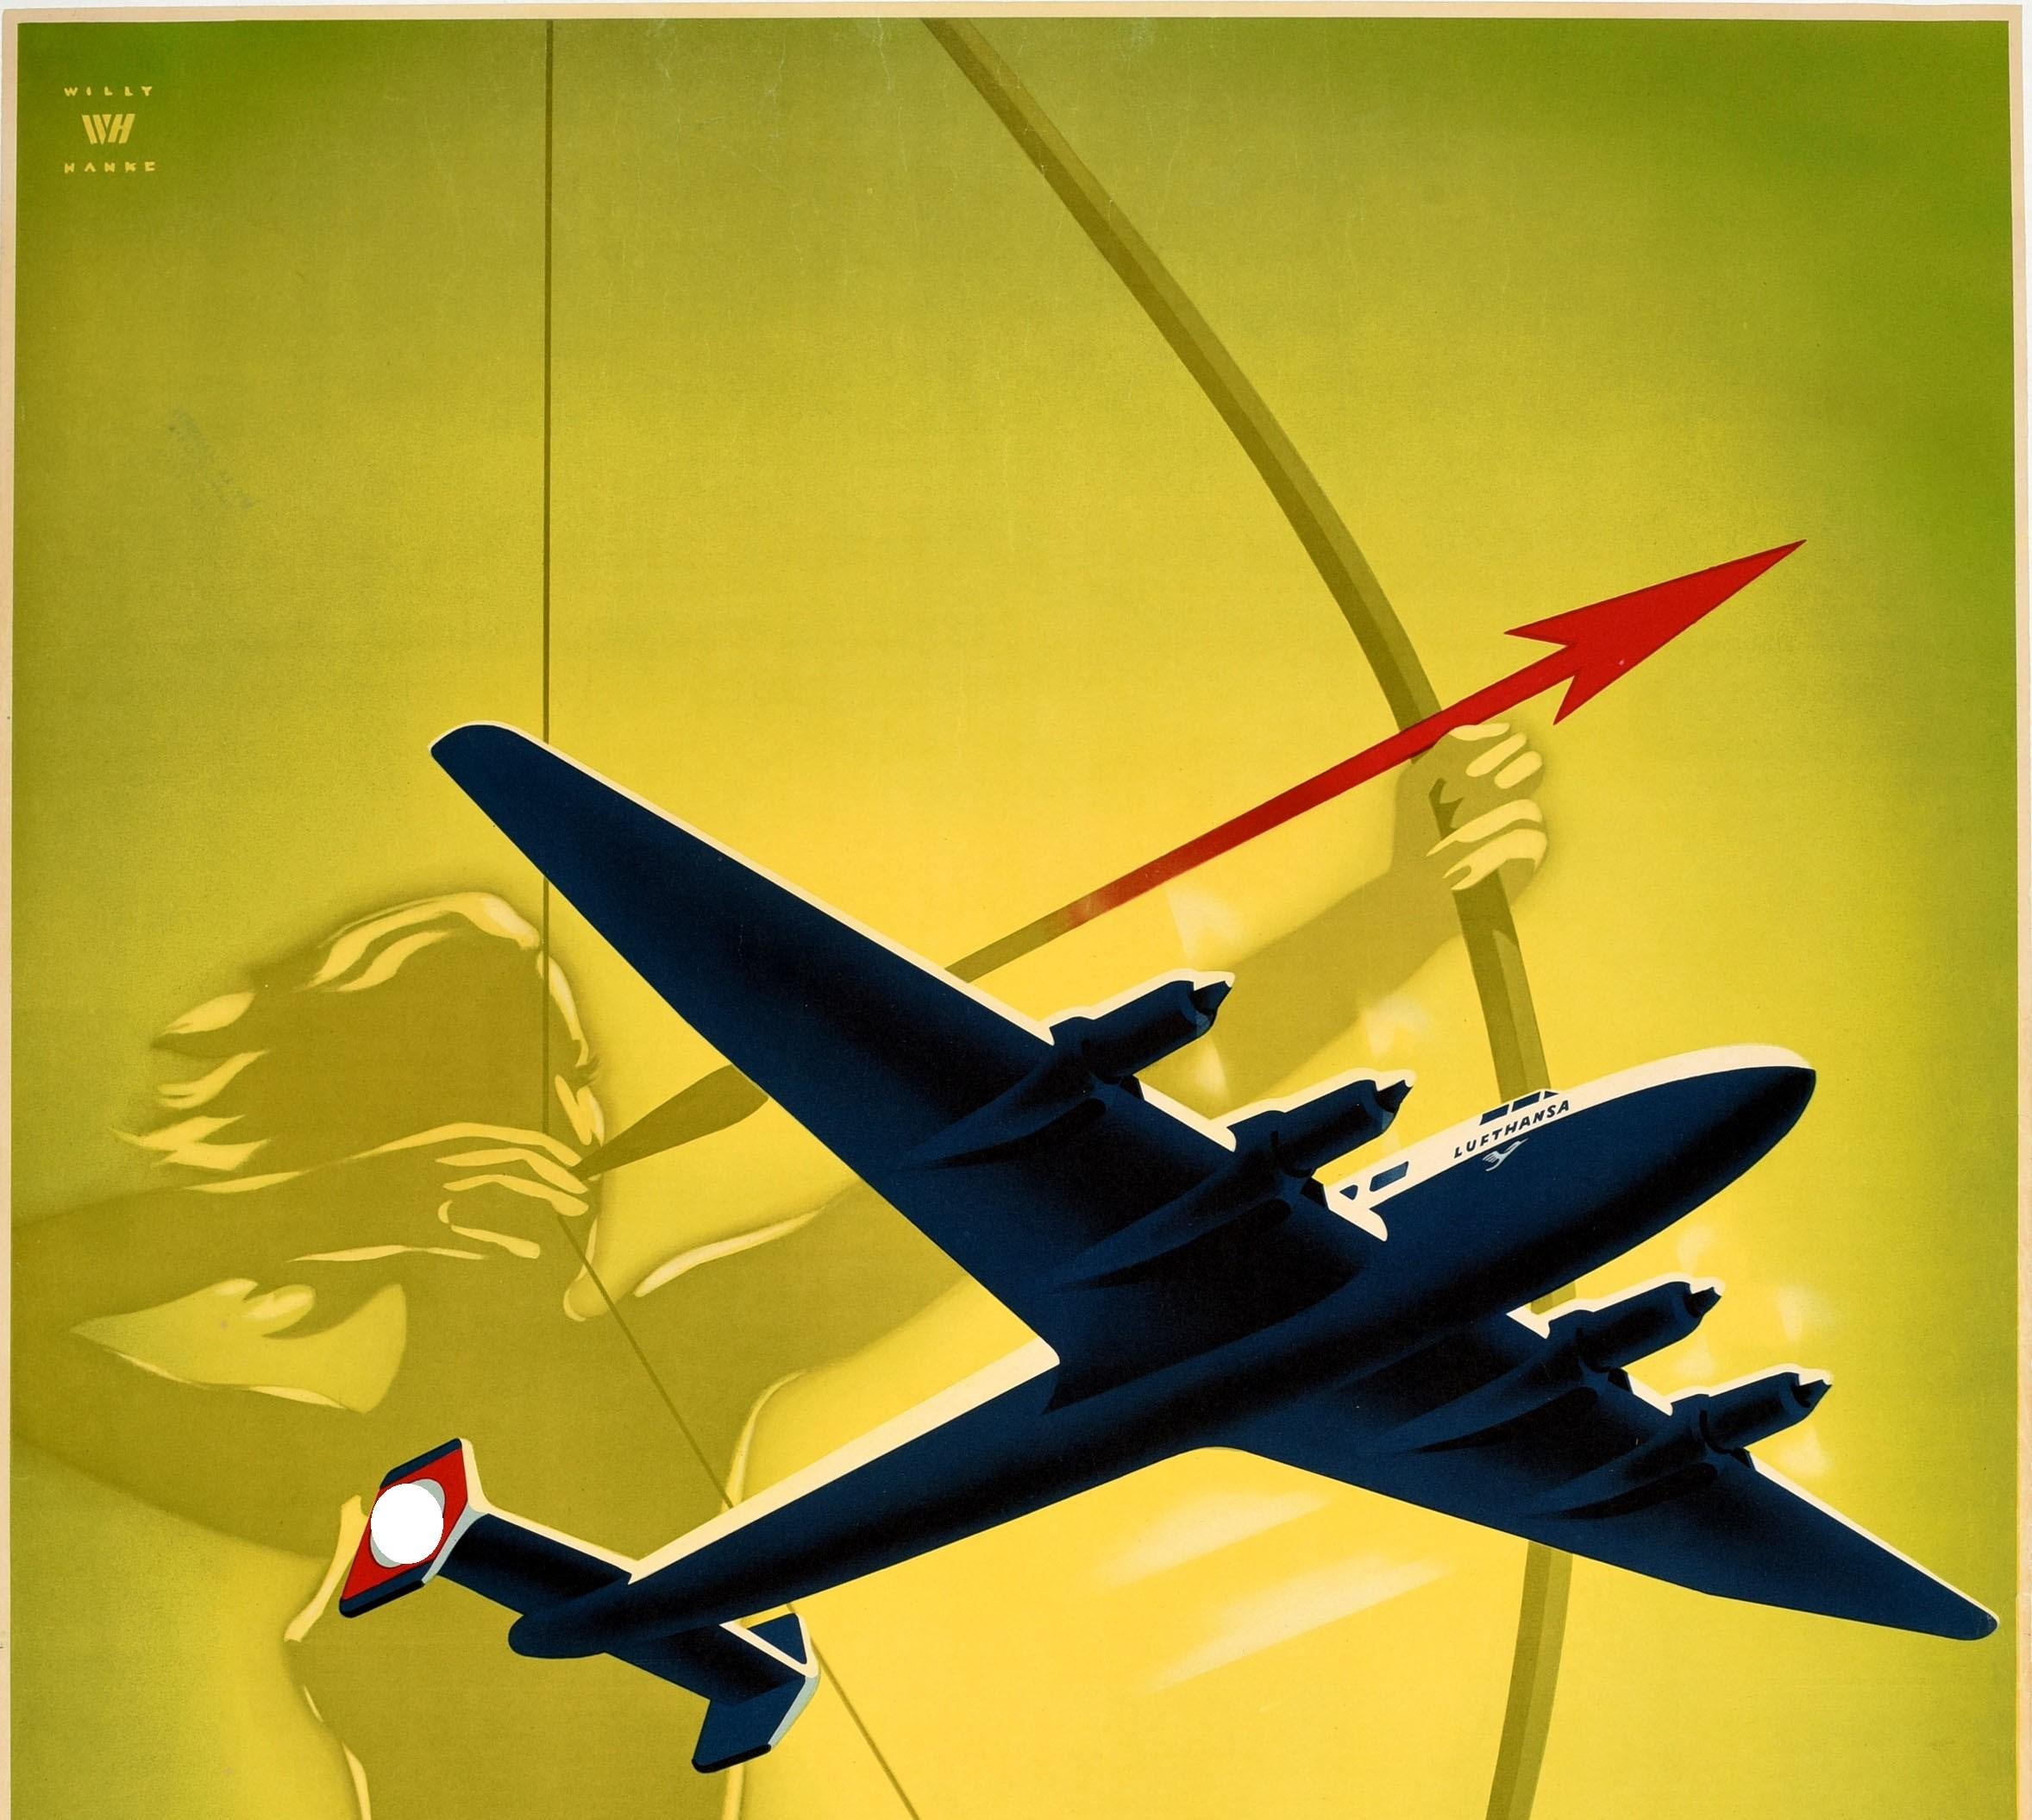 Original Vintage-Reiseplakat Deutsche Lufthansa Fast To The Goal, Pfeil-Design – Print von Willy Hanke